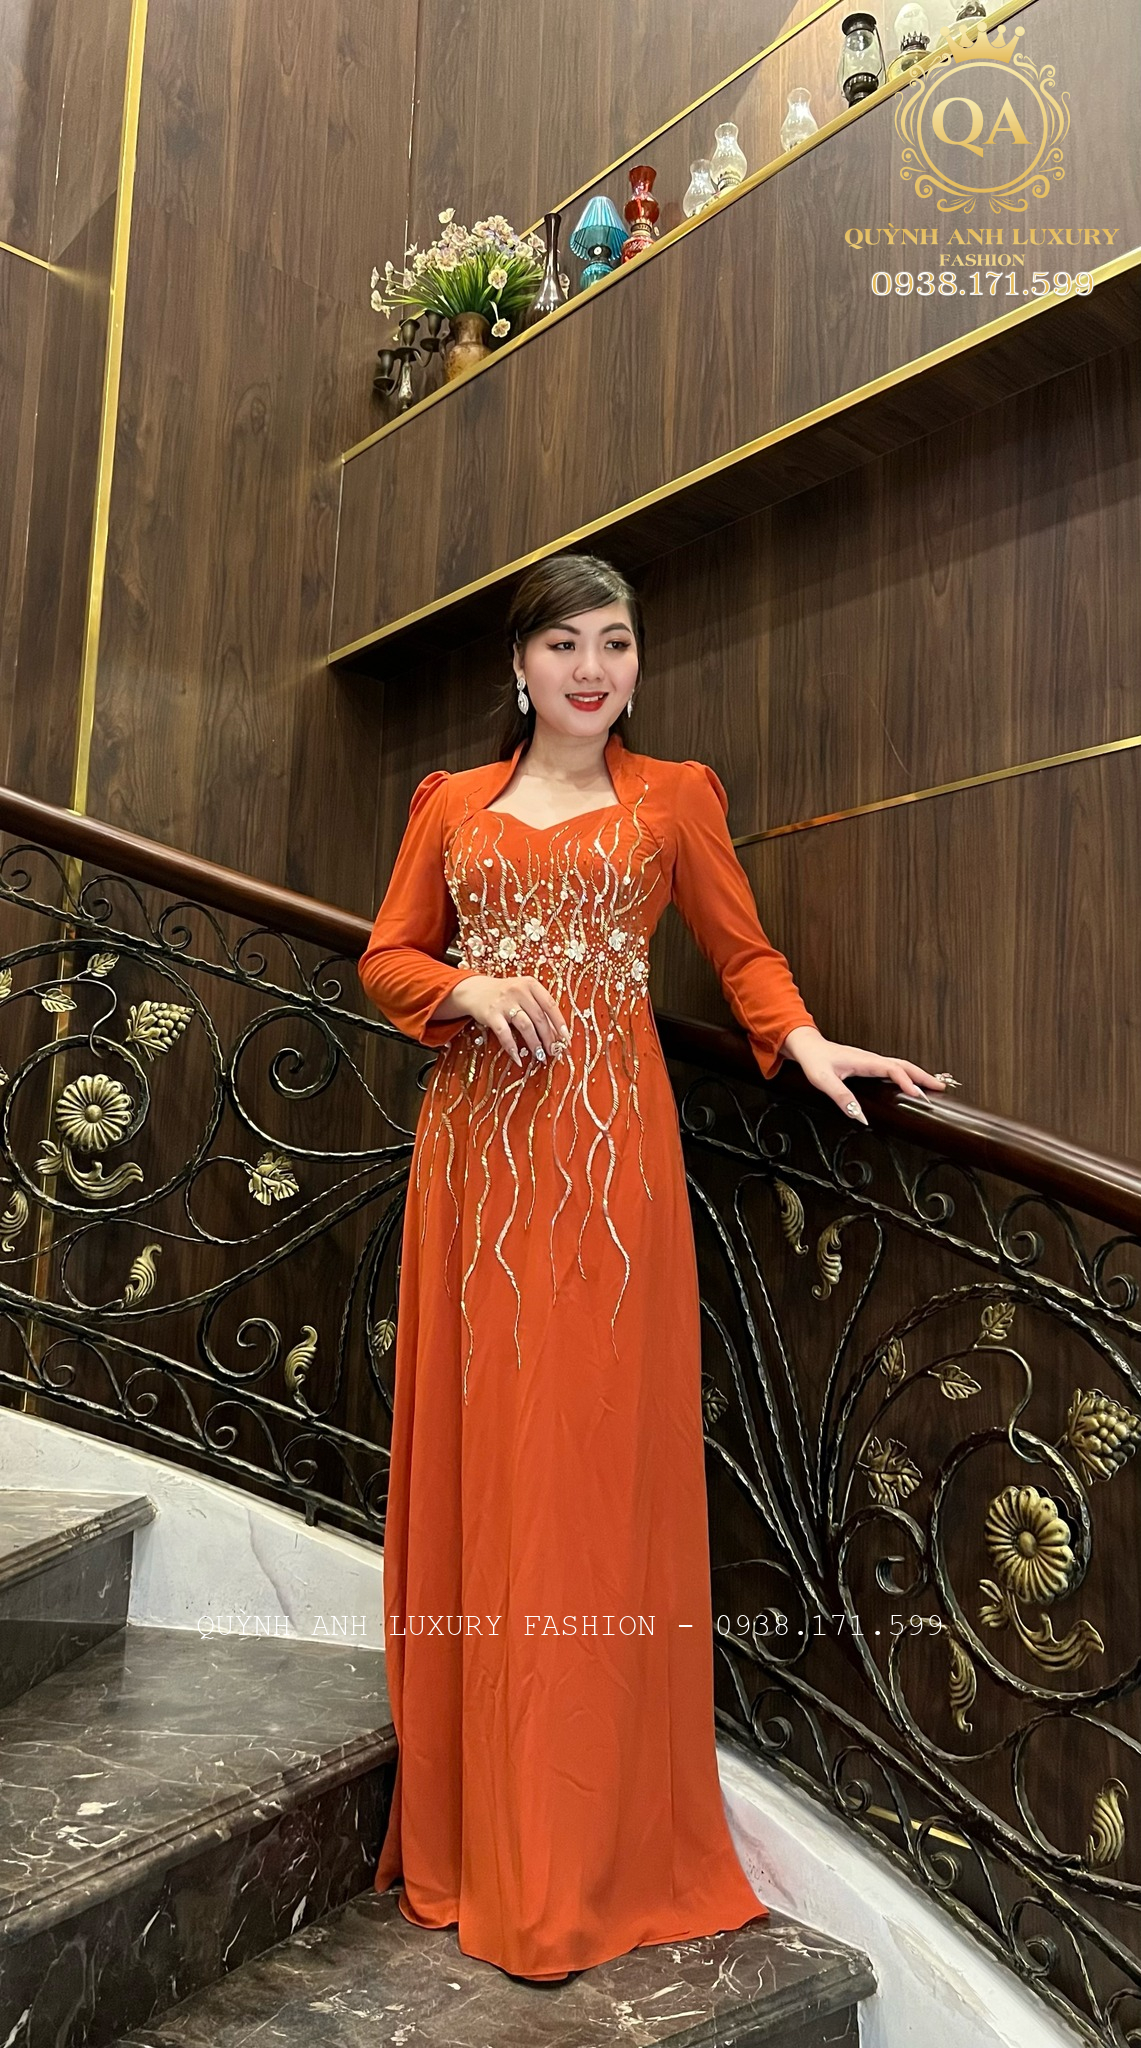 Mẫu áo dài dạ hội nữ hoàng best seller nhà Quỳnh Anh Luxury